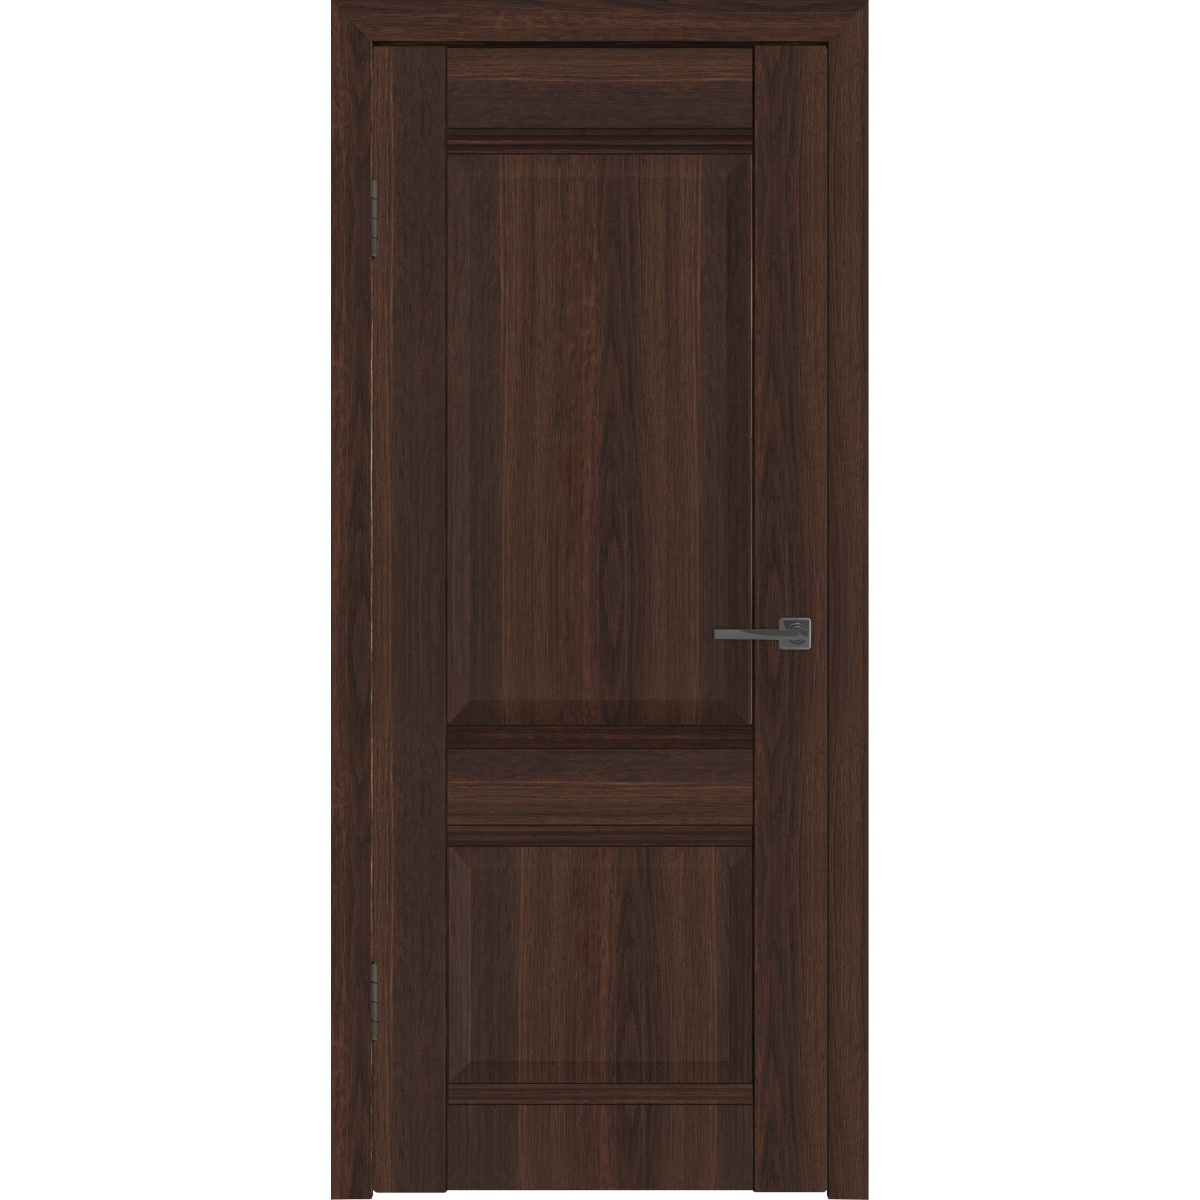 Дверь межкомнатная глухая с замком и петлями в комплекте Классик 2 60x200 см ПВХ цвет каштан